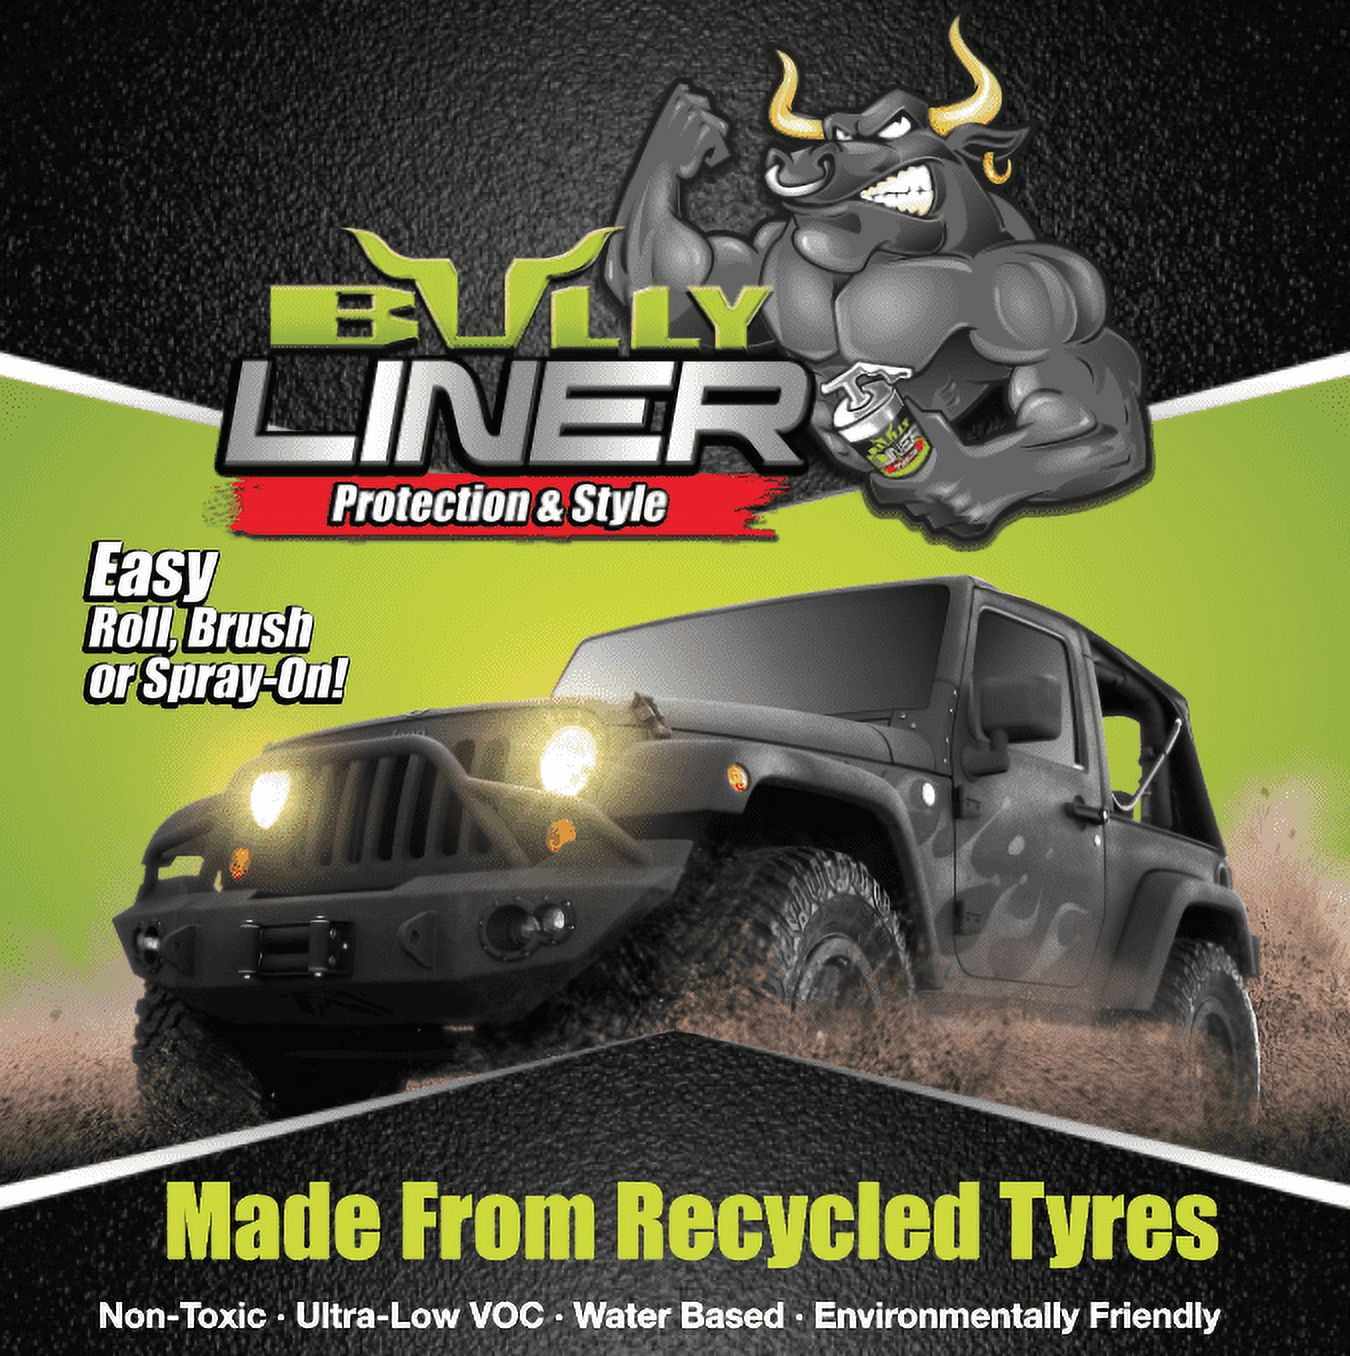 Bullyliner Canister Truck Bed Liner - Black - 1 L